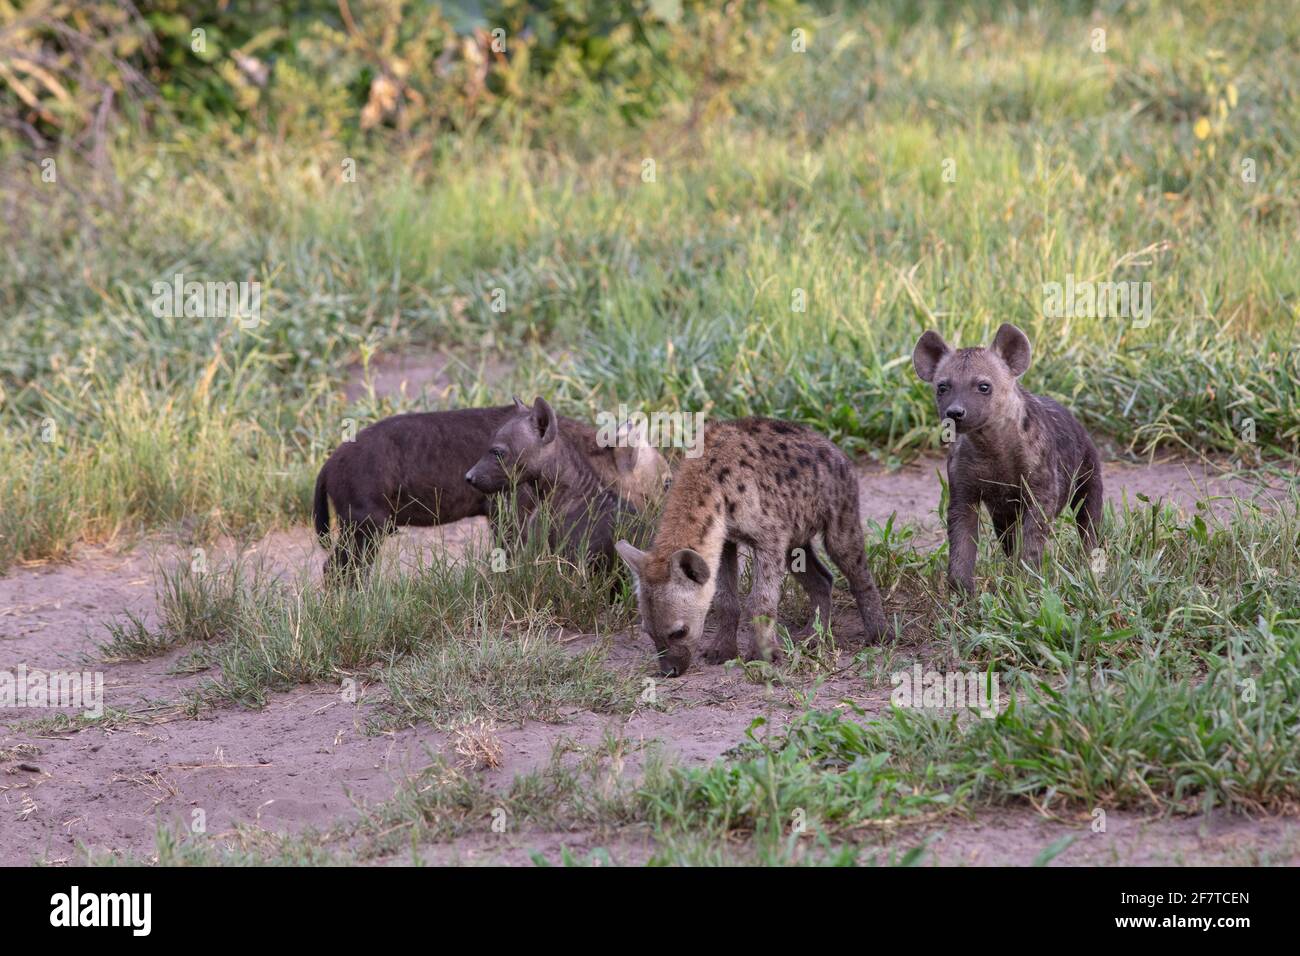 Gepunktete Hyena, Hyena (Crocuta crocuta). Vier Jungen oder Welpen, Jugendliche Jungen unterschiedlichen Alters, von verschiedenen Müttern. Den gemeinschaftlich. Außerhalb ihrer sh Stockfoto